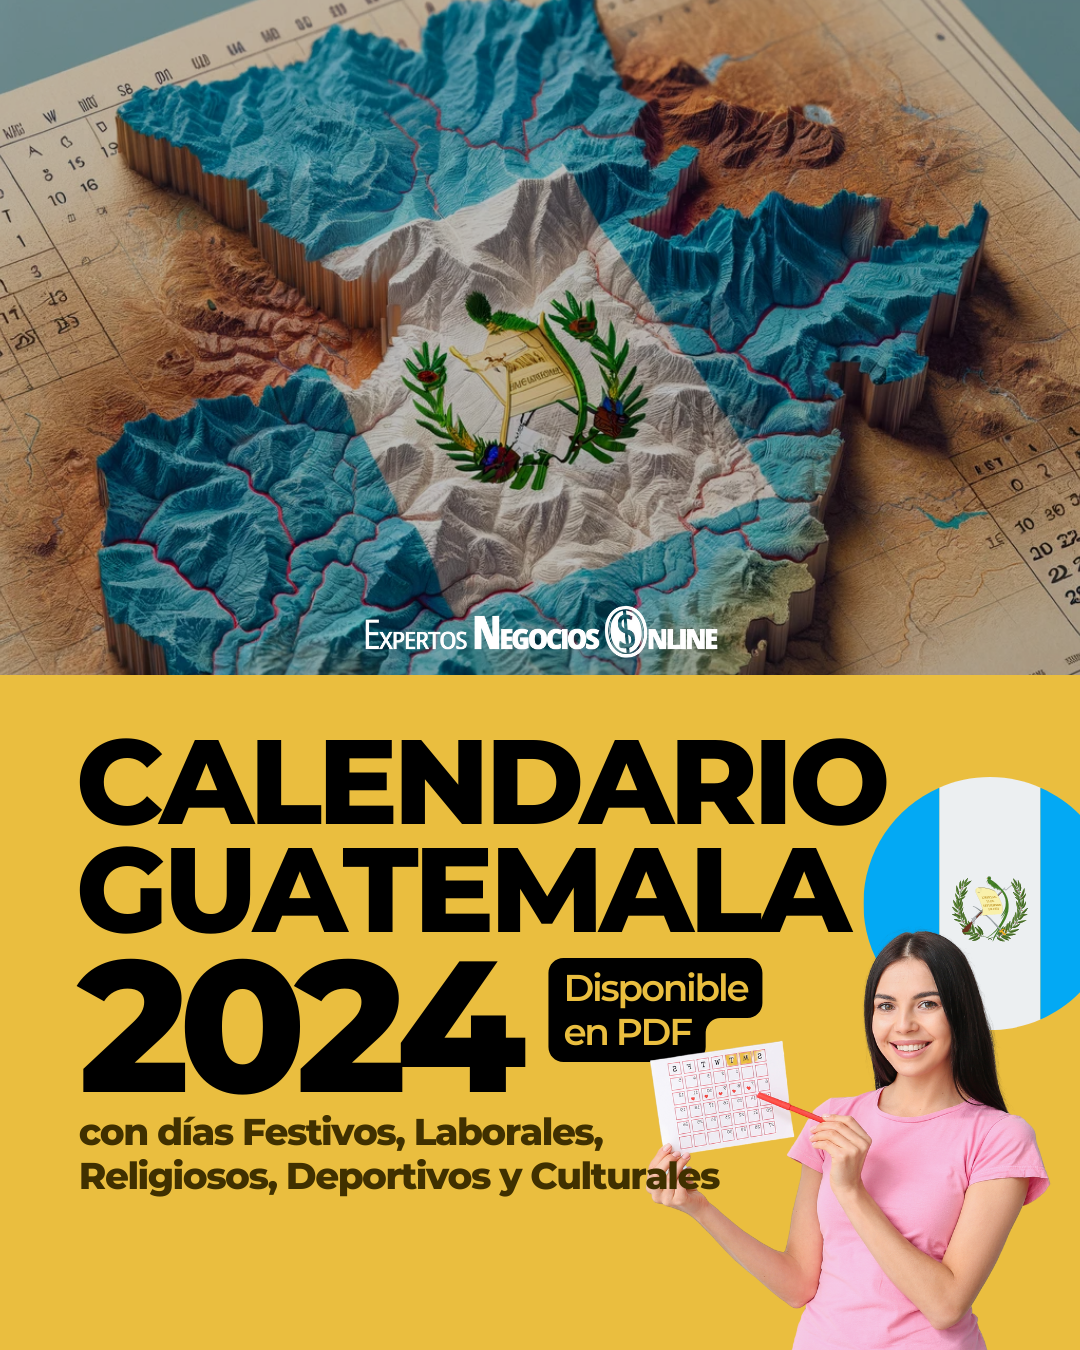 Calendario Guatemala 2024 con Feriados y fechas importantes - Almanaque y asuetos